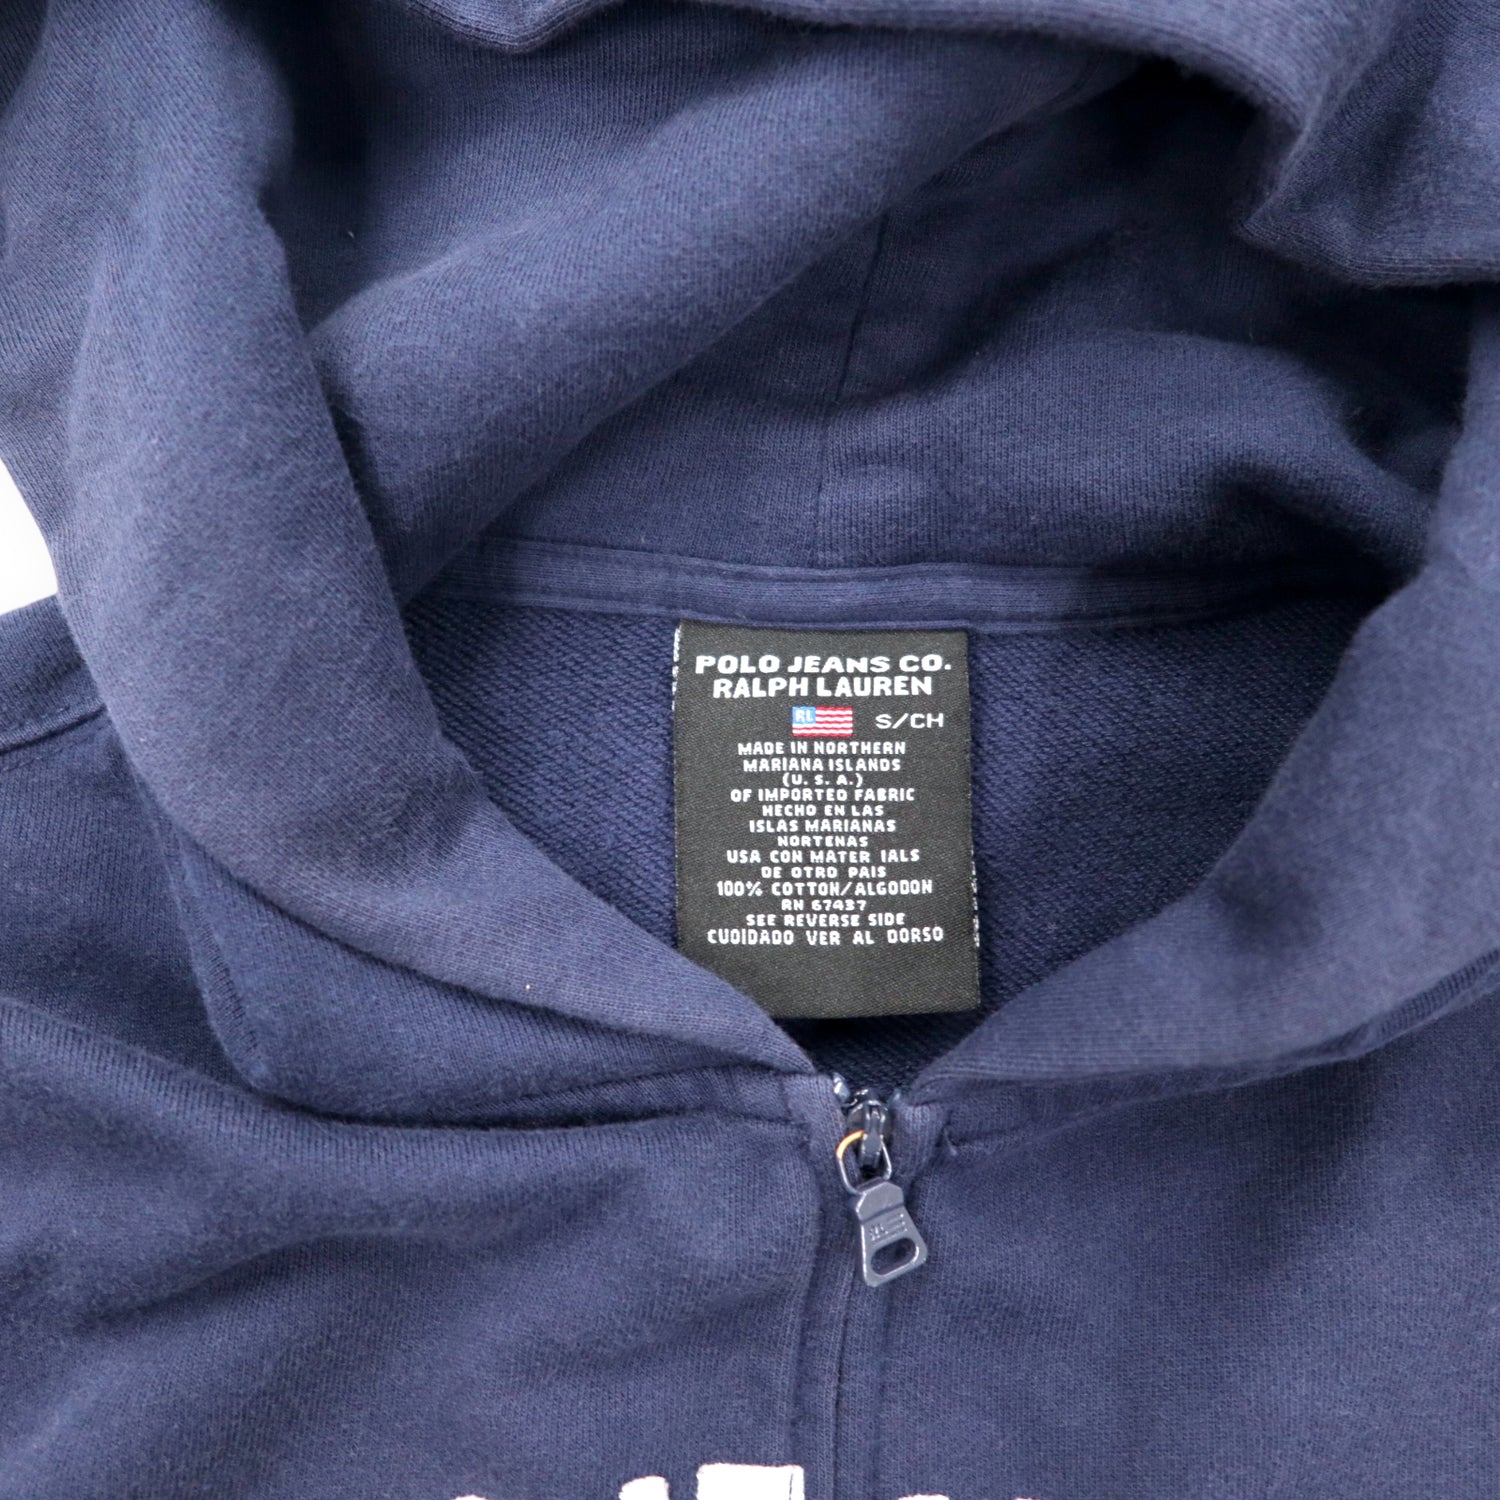 POLO Jeans Co. Ralph Lauren 90's Full Zip Up Hoodie S Navy Cotton